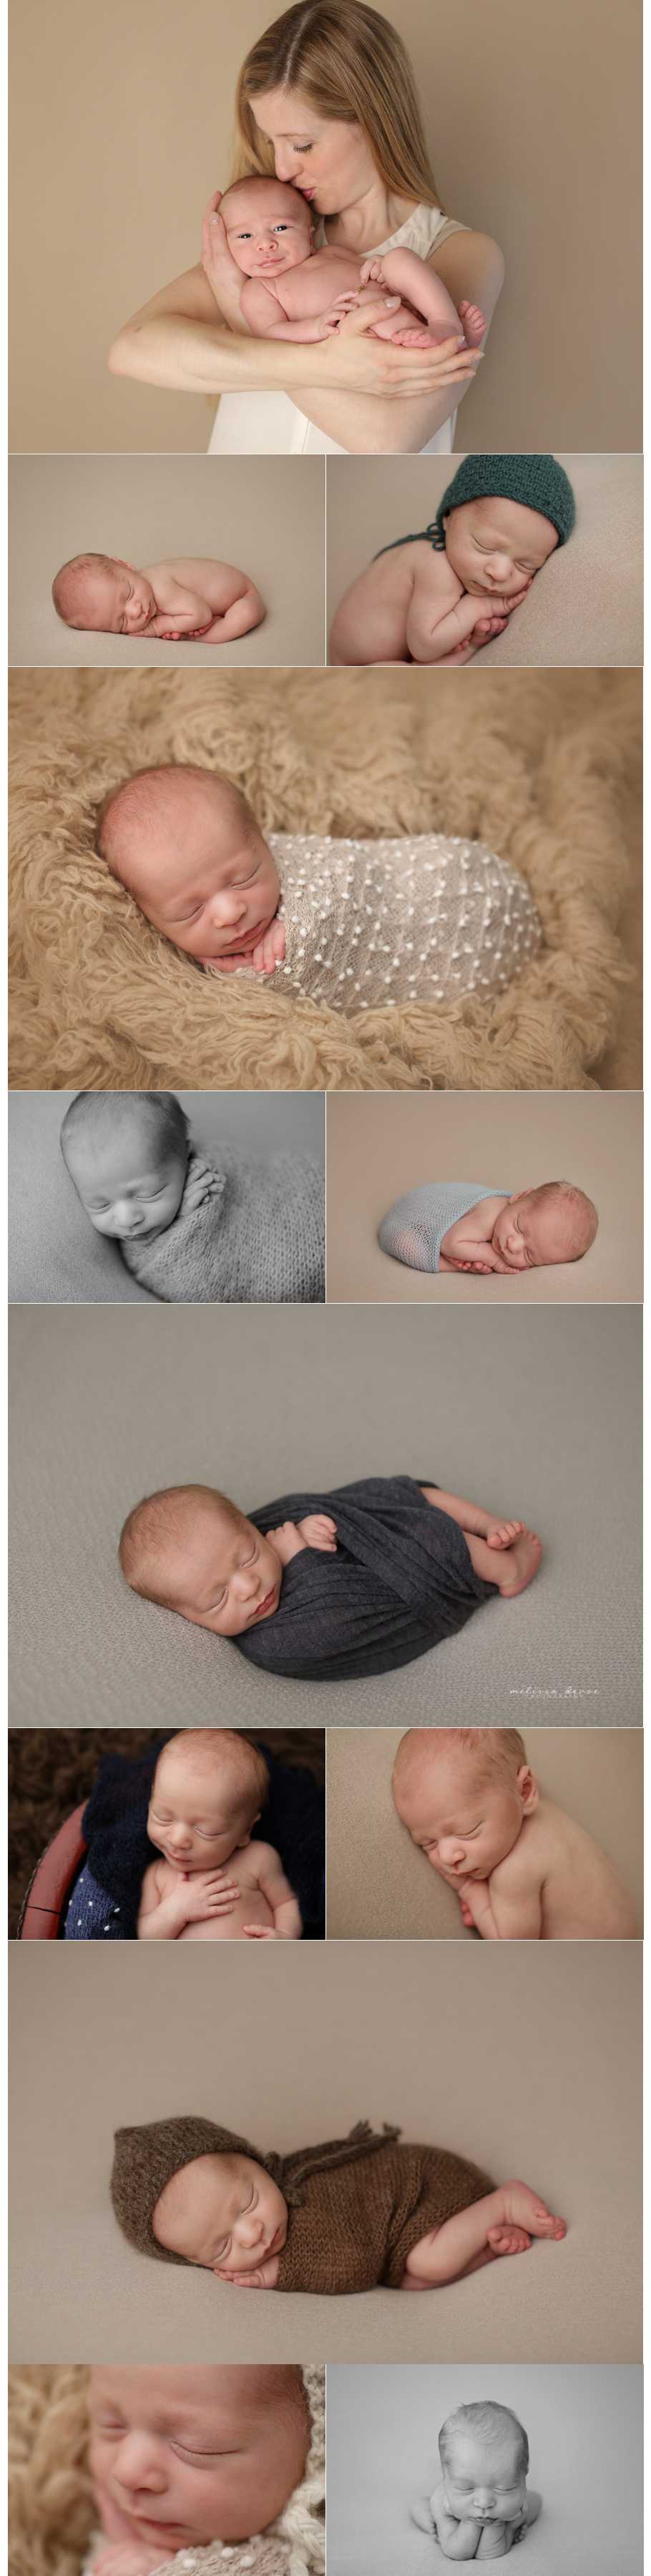 Raleigh Newborn Baby Photographer 2